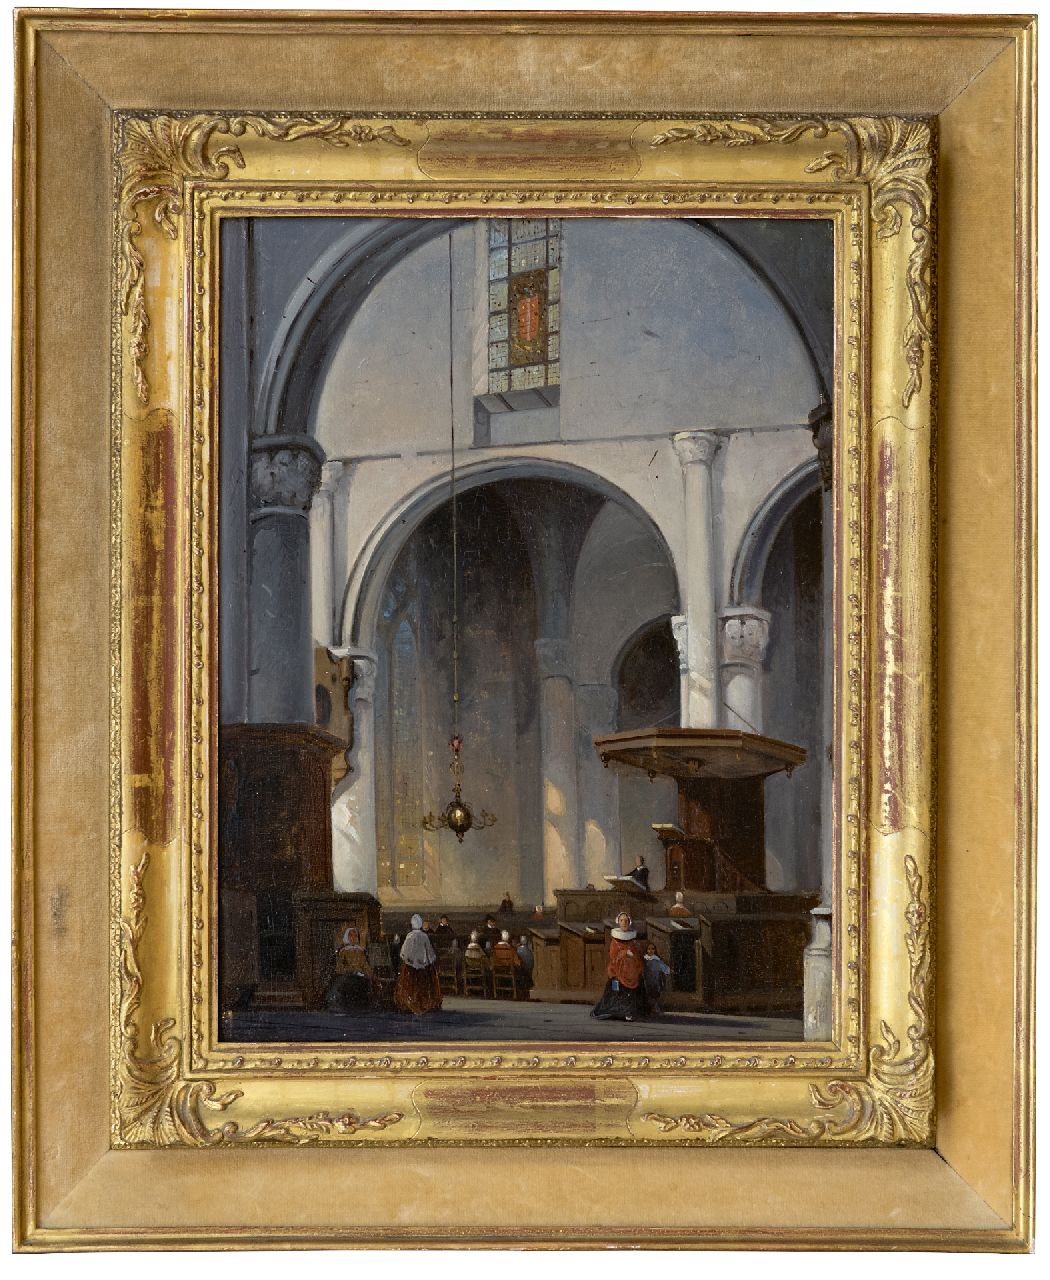 Laar J.H. van de | Jan Hendrik van de Laar | Schilderijen te koop aangeboden | Kerkinterieur, olieverf op paneel 36,9 x 27,9 cm